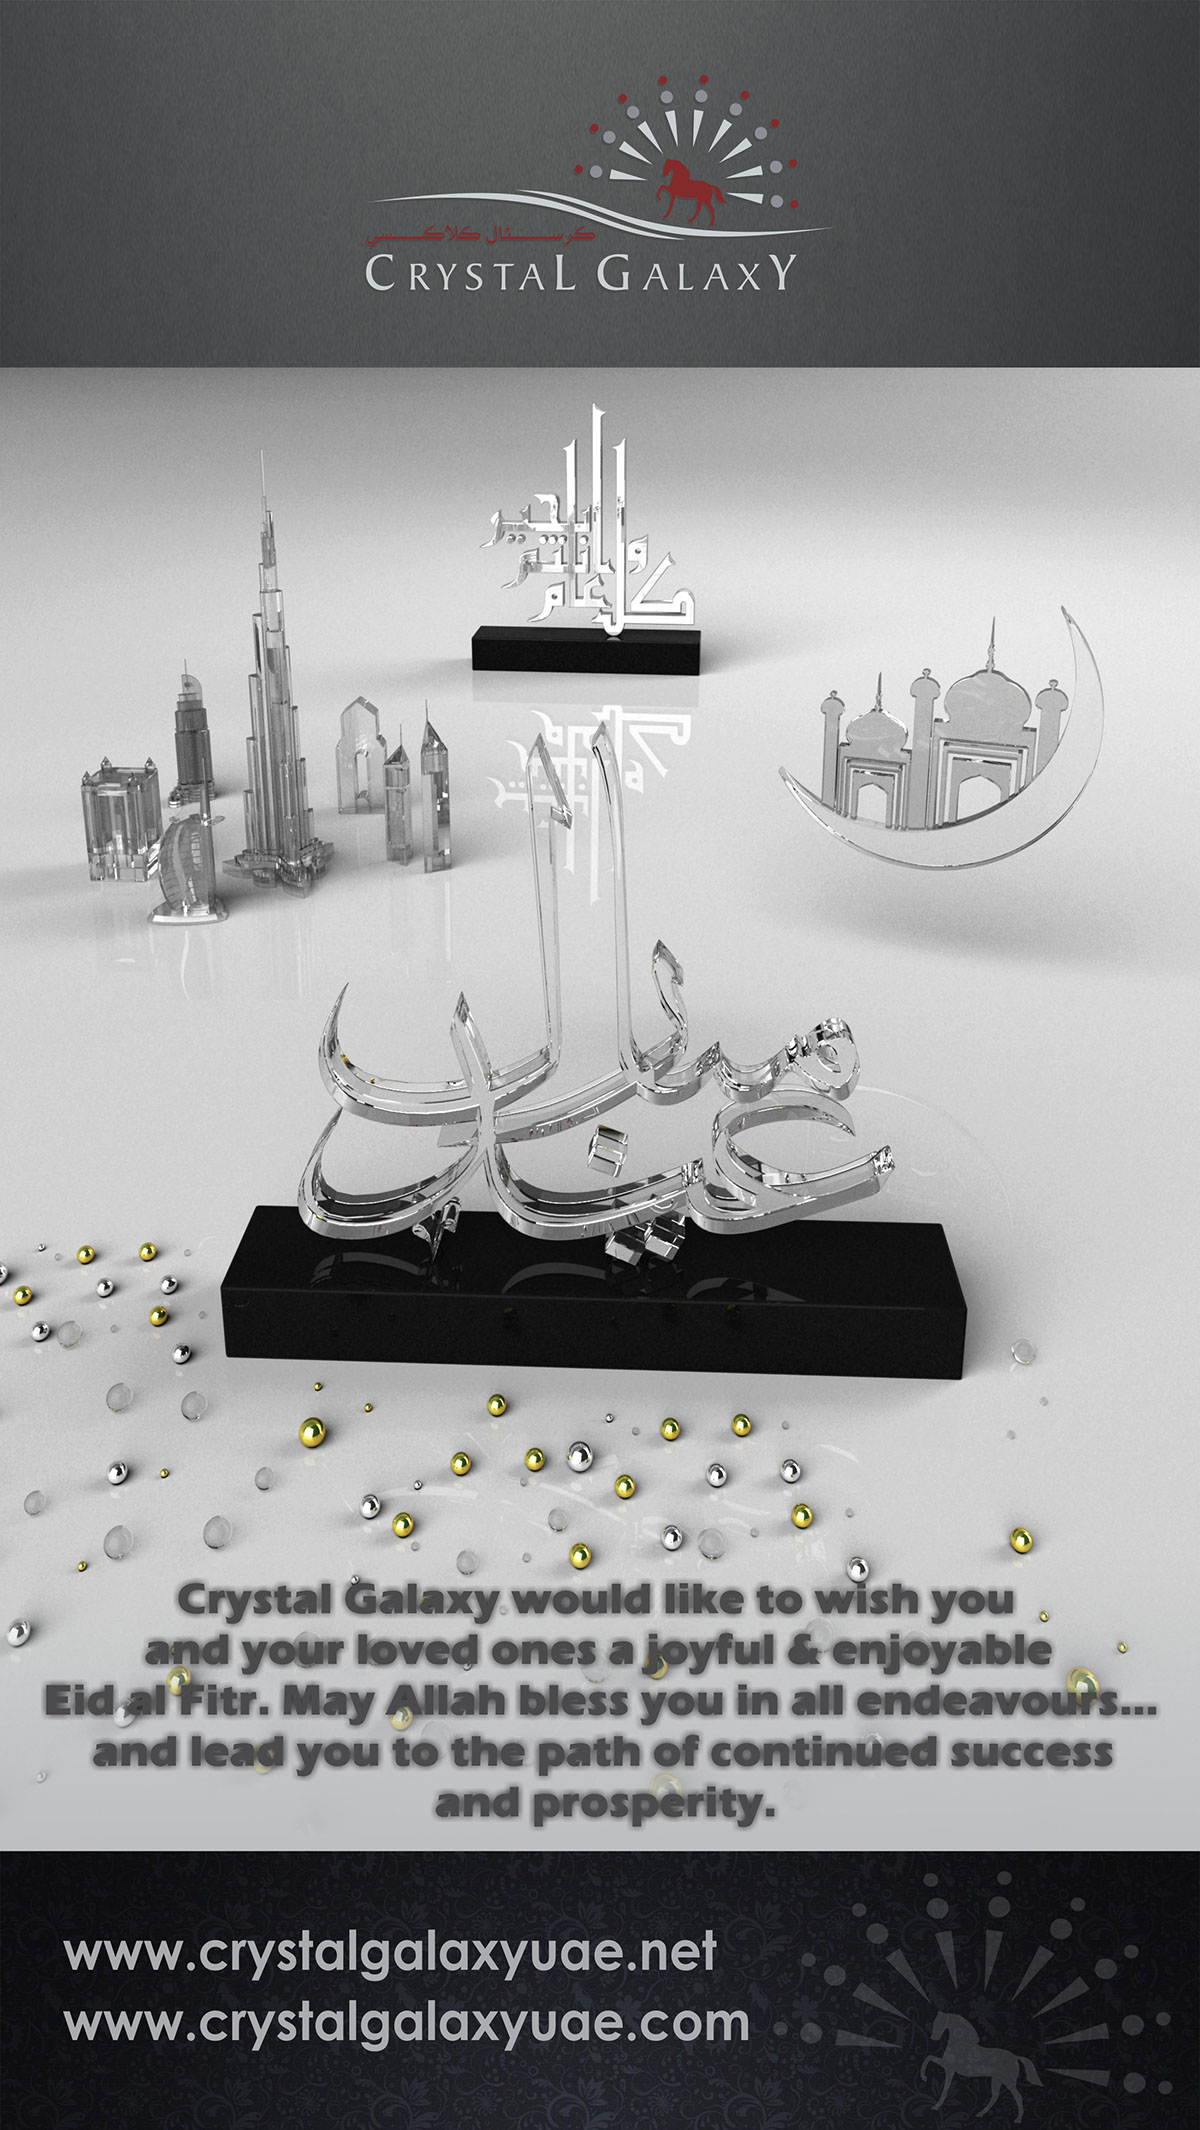 Eid crystal galaxy award gift celebration metal gold silver